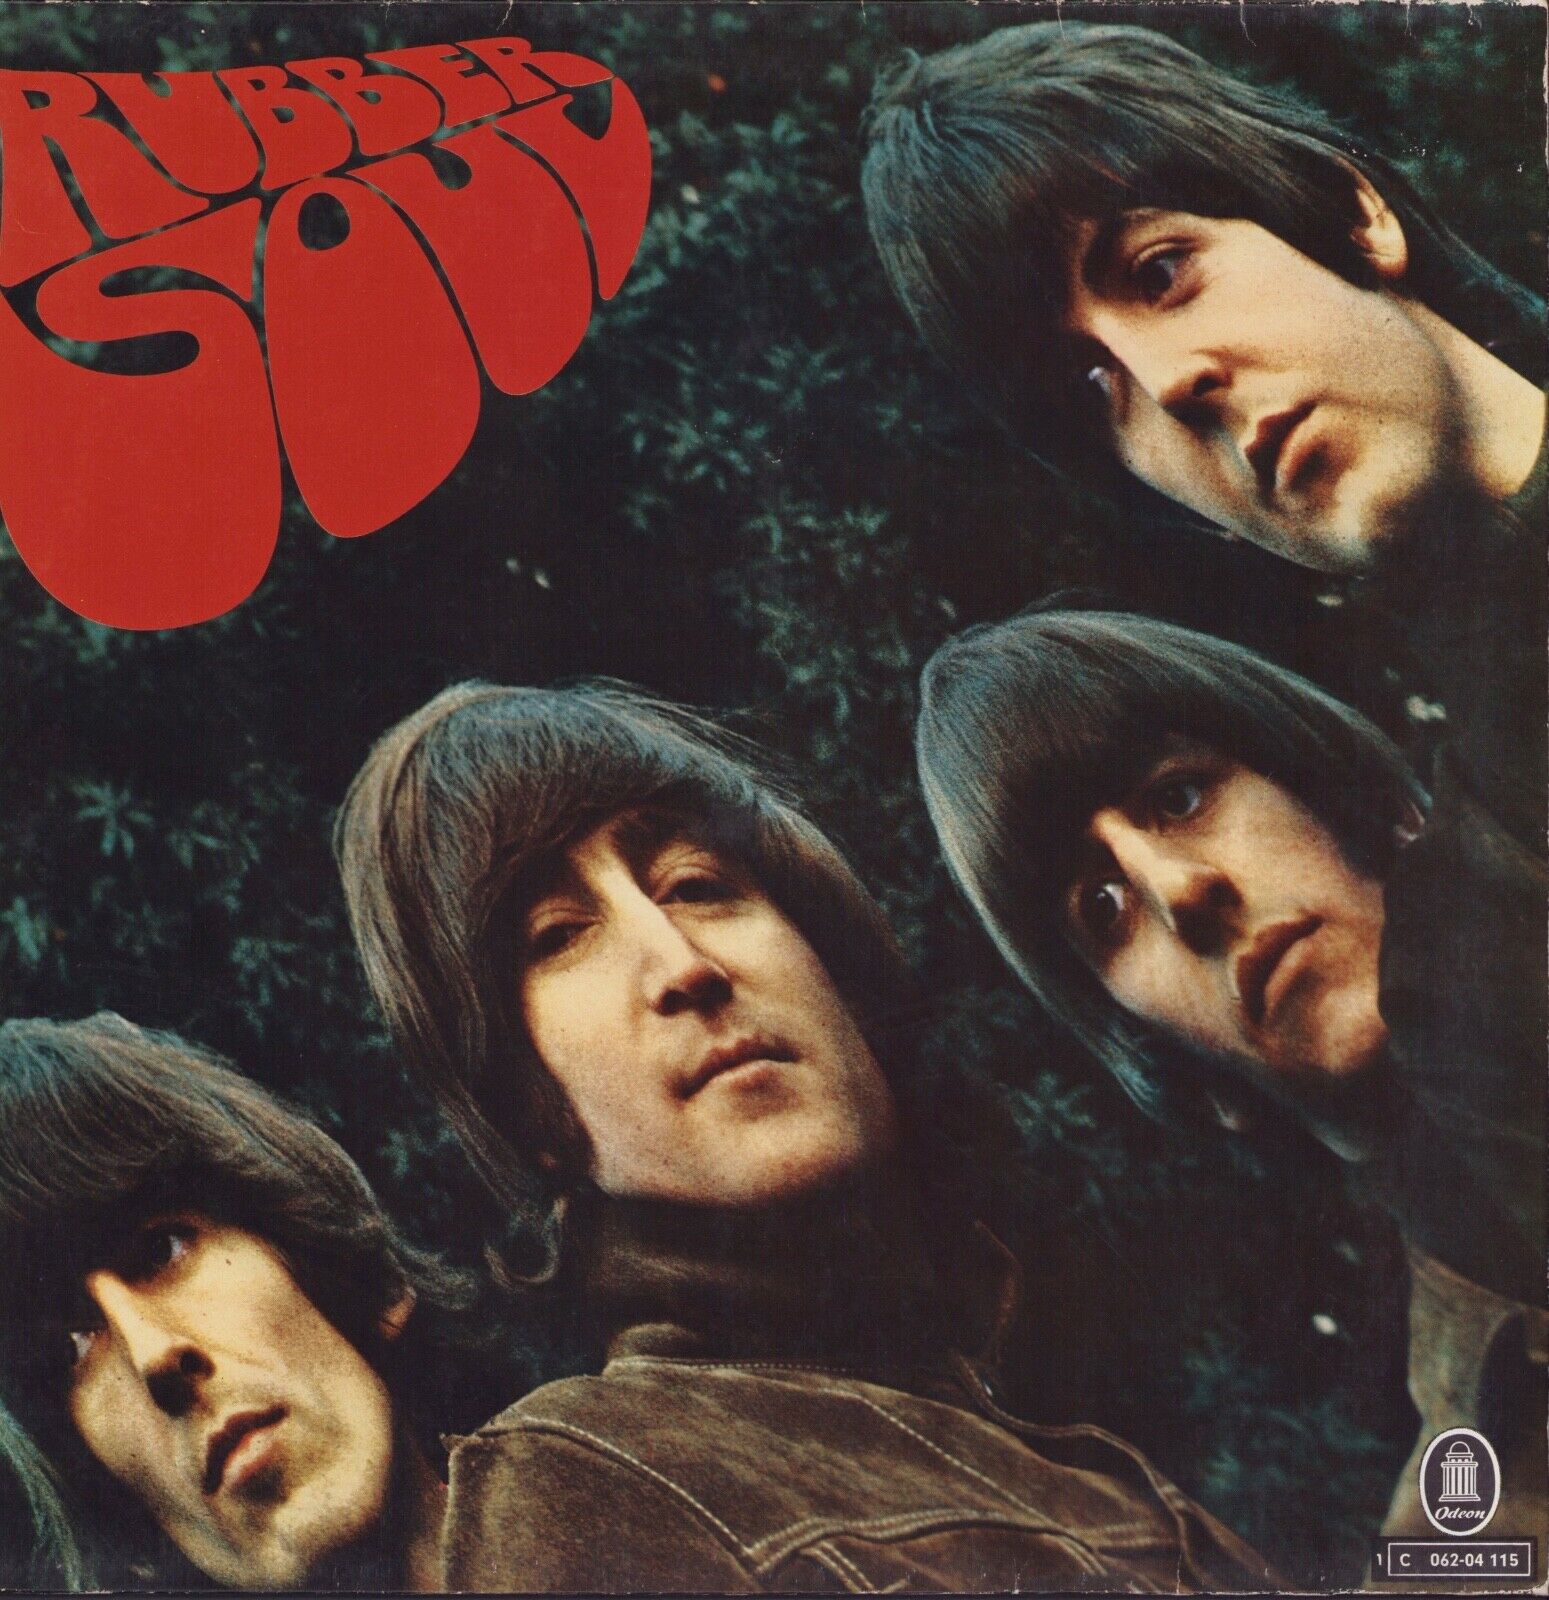 The Beatles ‎- Rubber Soul Vinyl LP